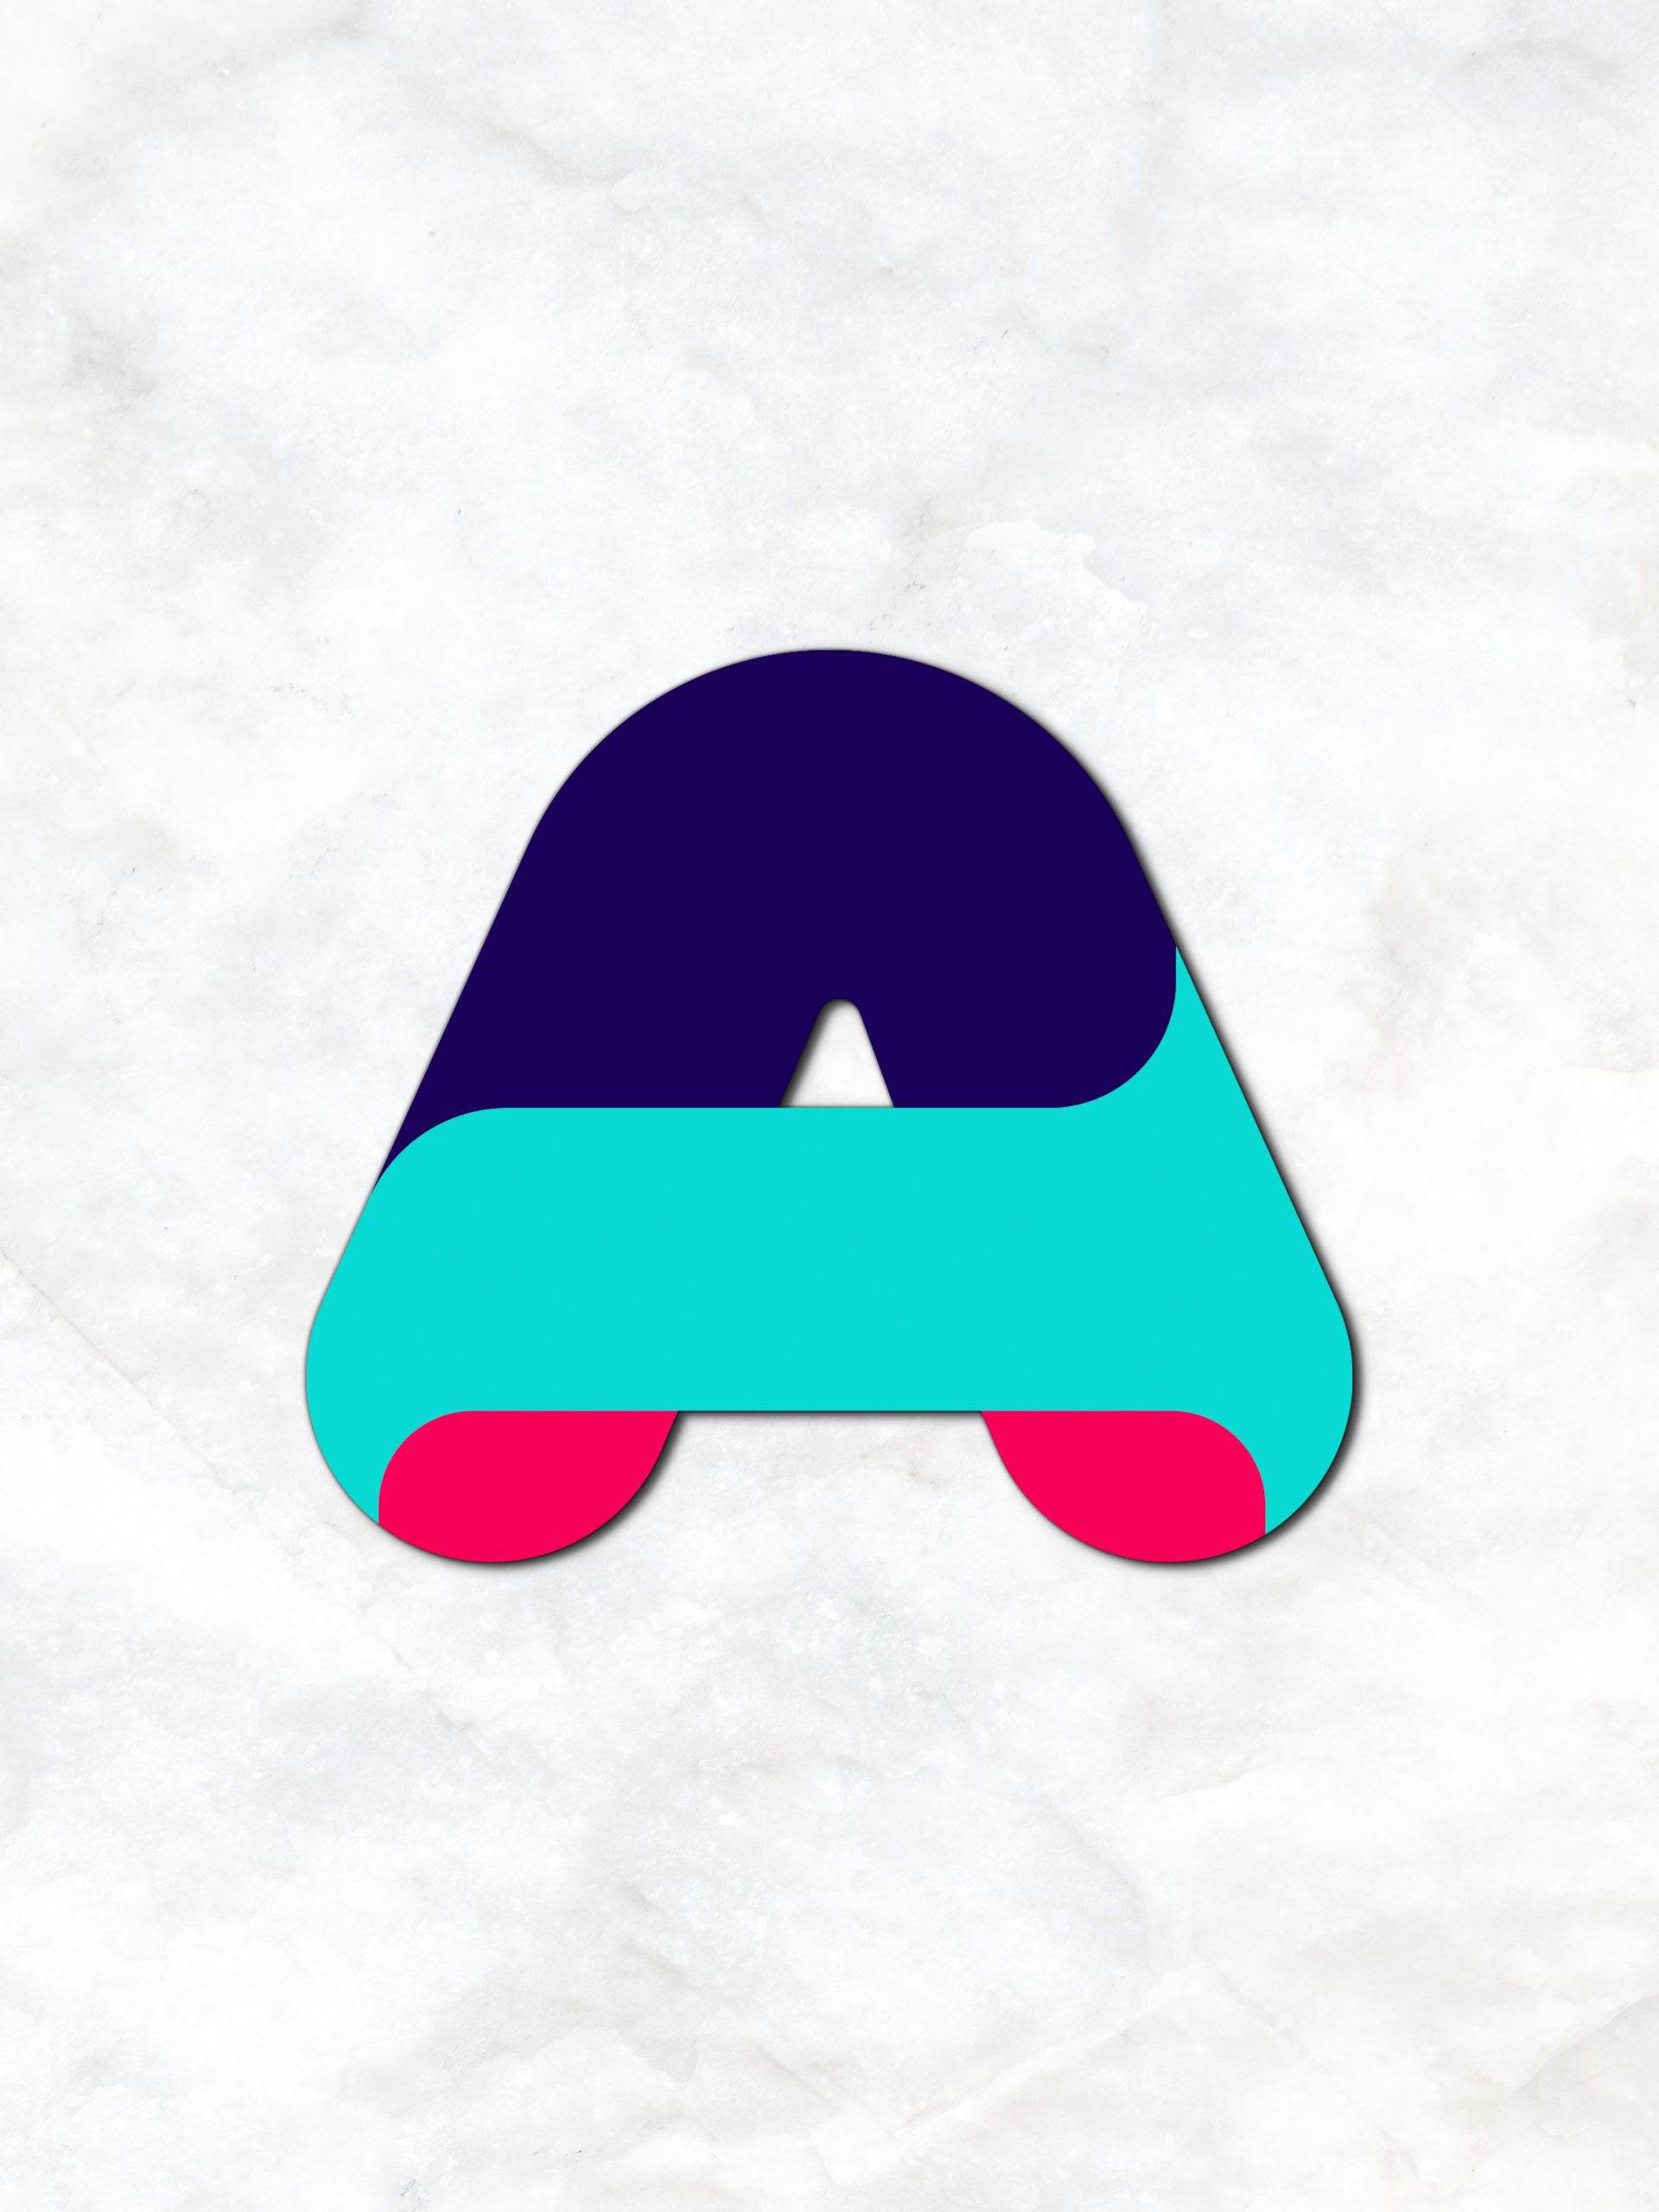 Acamar Branding 3D Logo On Wall